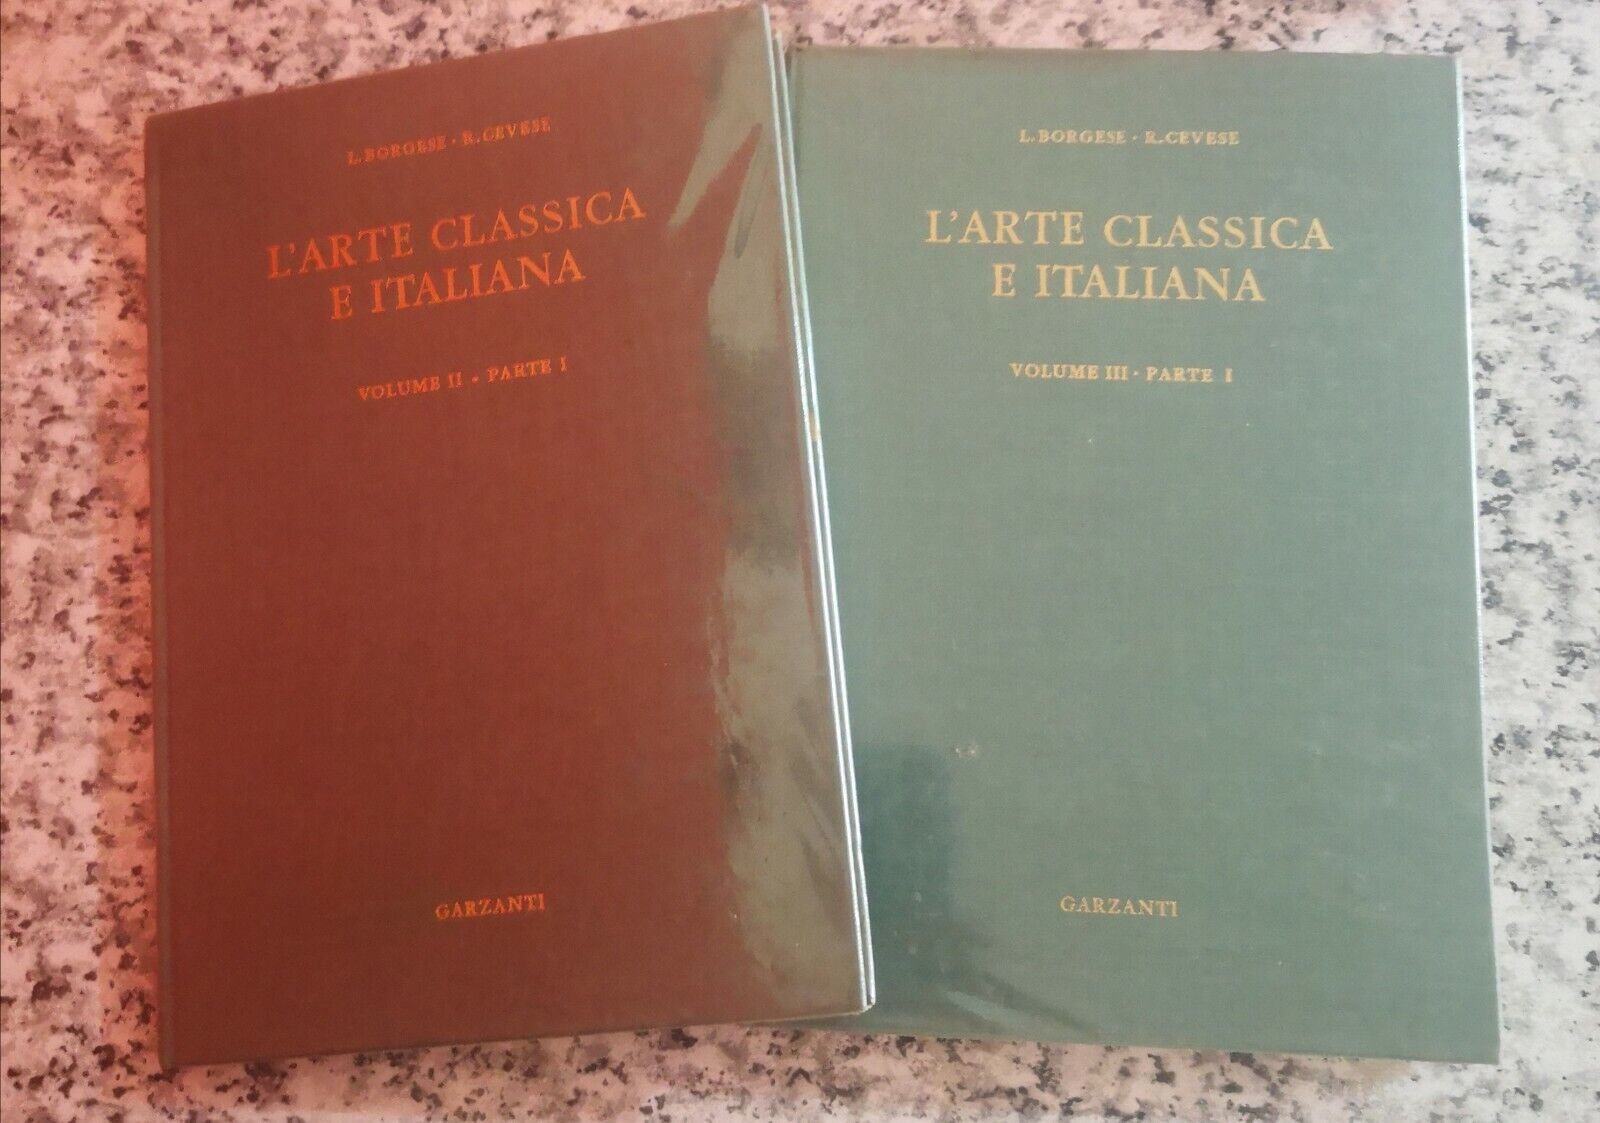 L'arte classica e Italiana, vol 3 parte 1 e vol 2 parte 1 di Borgese E Cevese -F